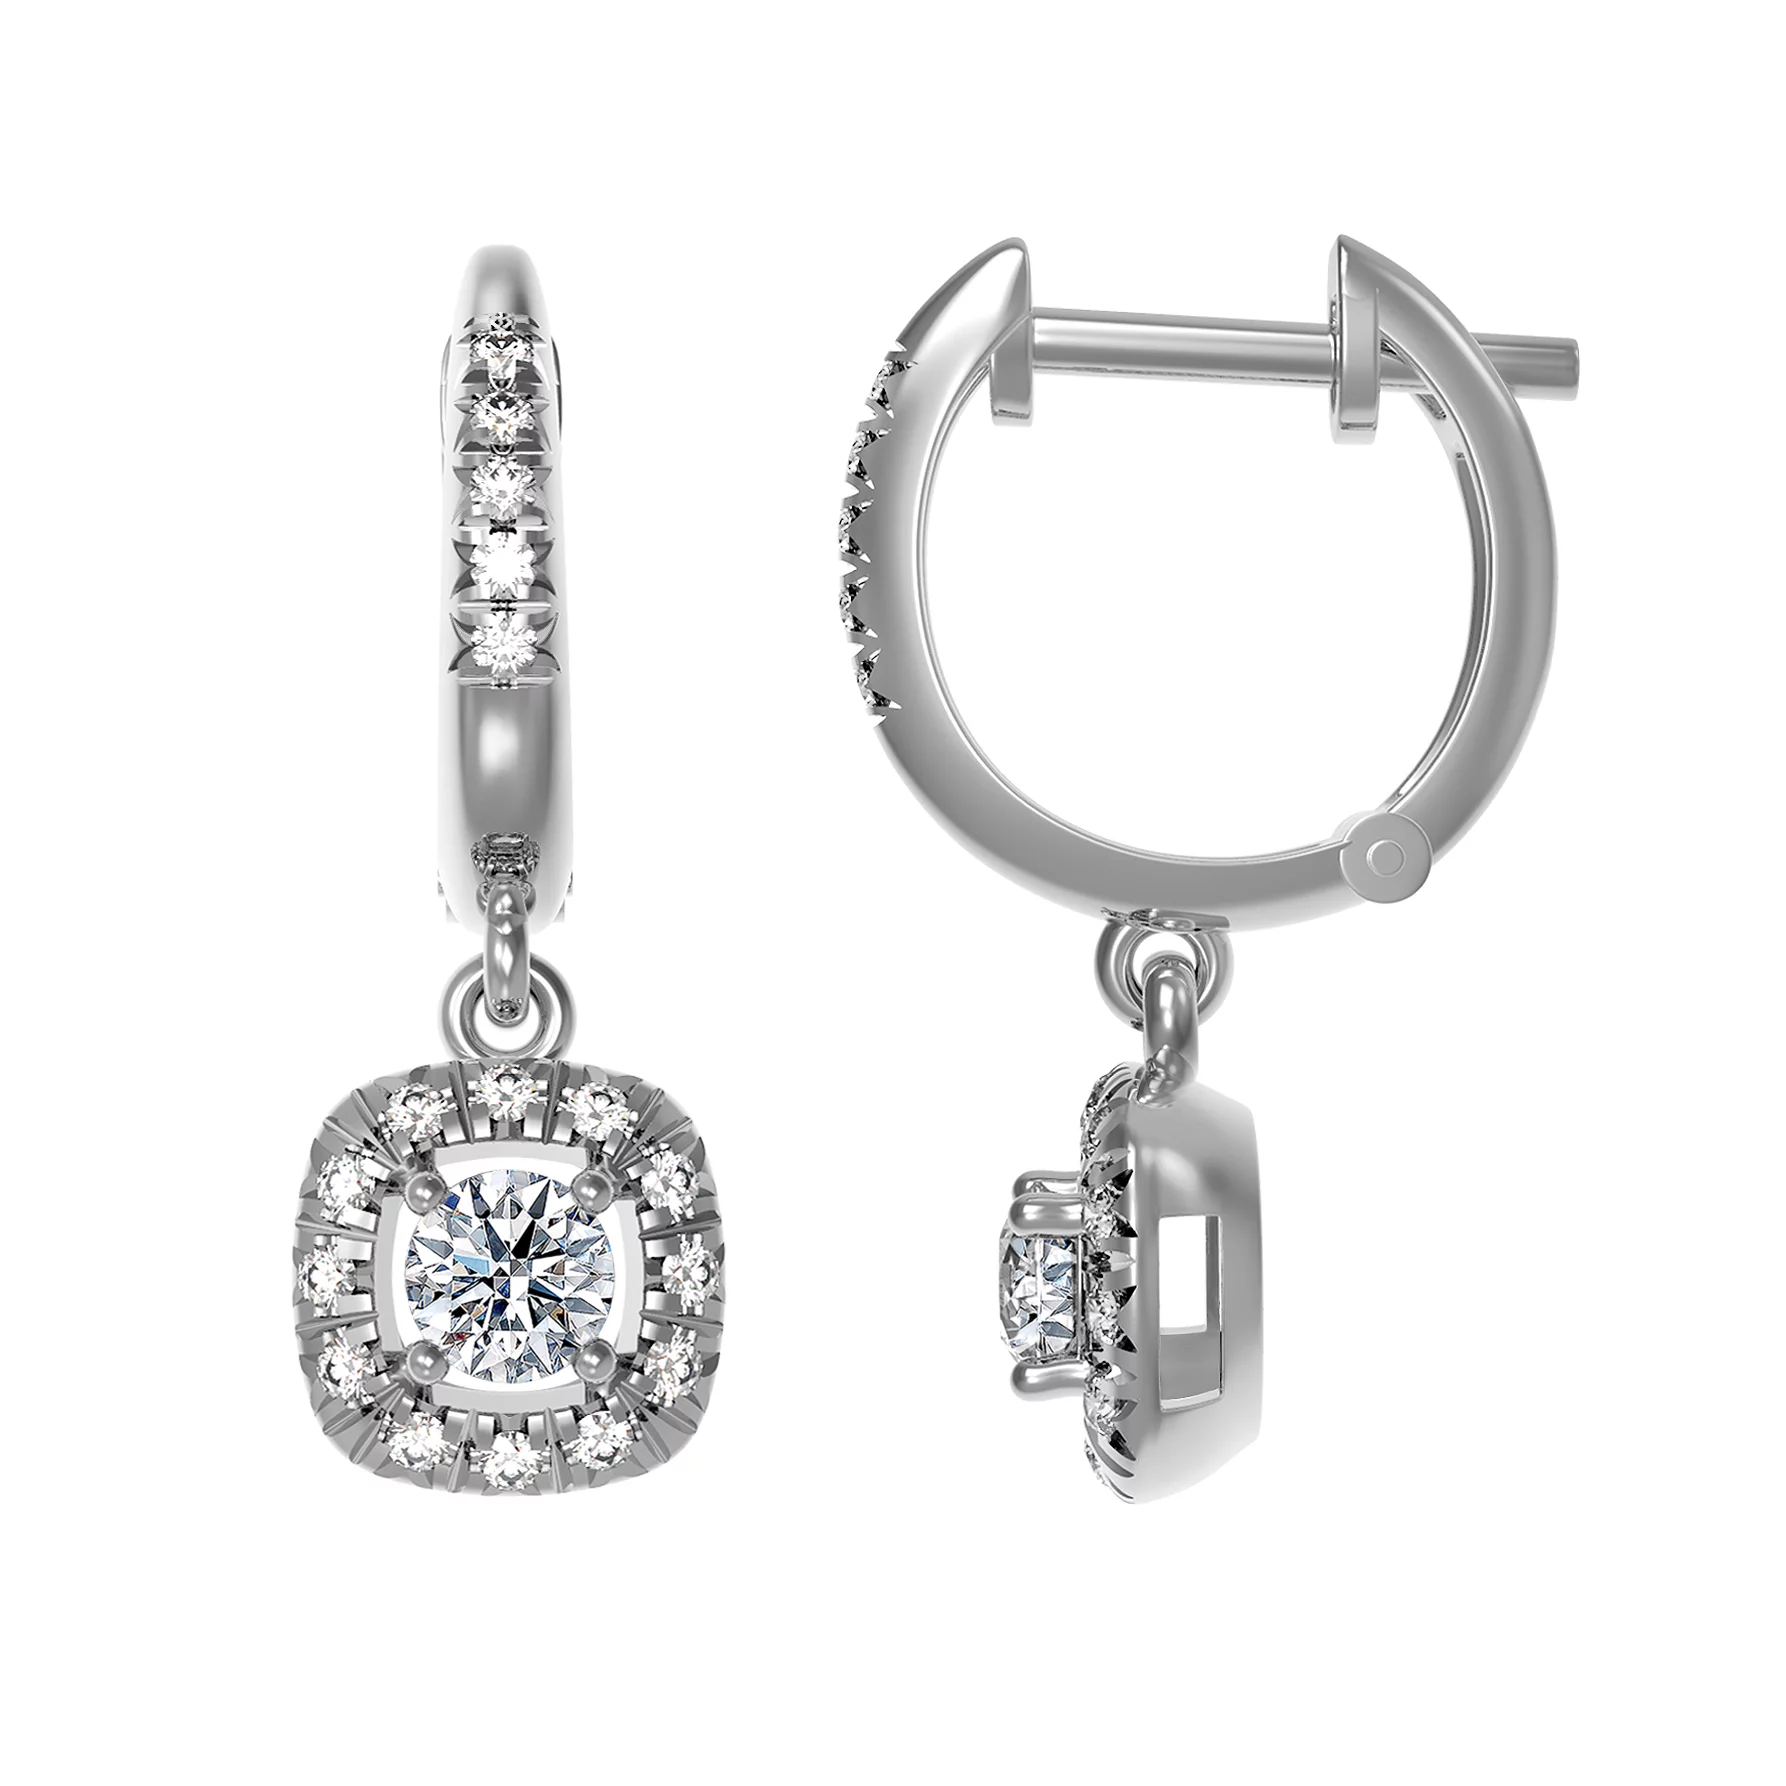 Сережки-кольца из белого золота с бриллиантами. Артикул 23185ббрил: цена, отзывы, фото – купить в интернет-магазине AURUM